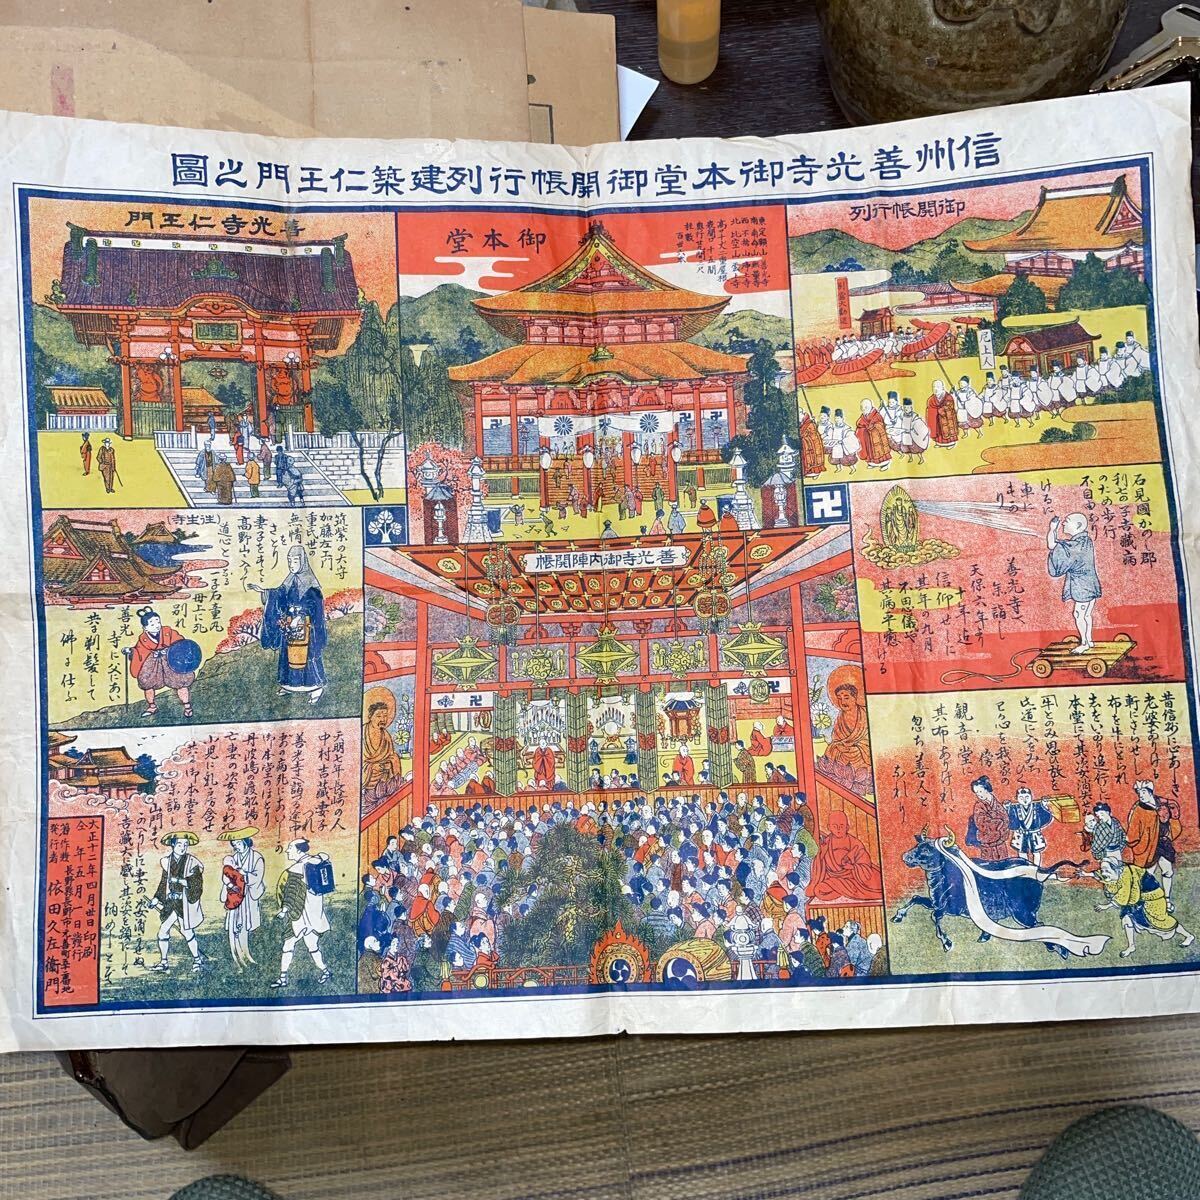 Este es un diagrama de la Puerta Niomon., la sala principal del templo Zenkoji. Impreso el 30 de abril., 1923. Publicado por Kyusaemon Yoda., cuadro, Ukiyo-e, imprimir, foto de lugar famoso